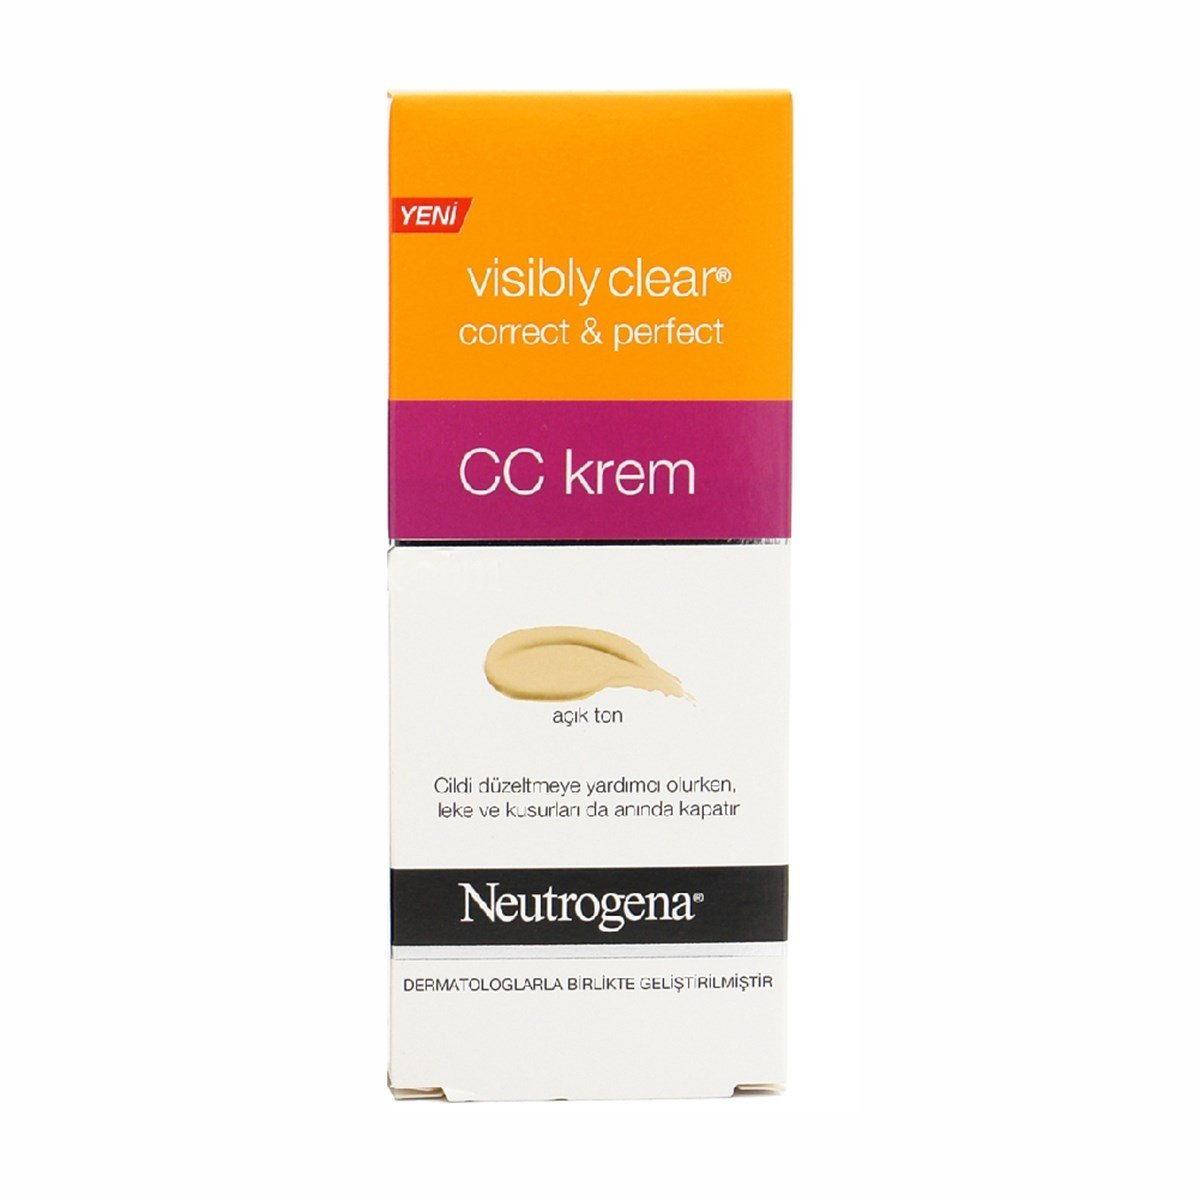 Neutrogena Visibly Clear Correct & Perfect CC Krem Açık Ton 50 ml - Platin